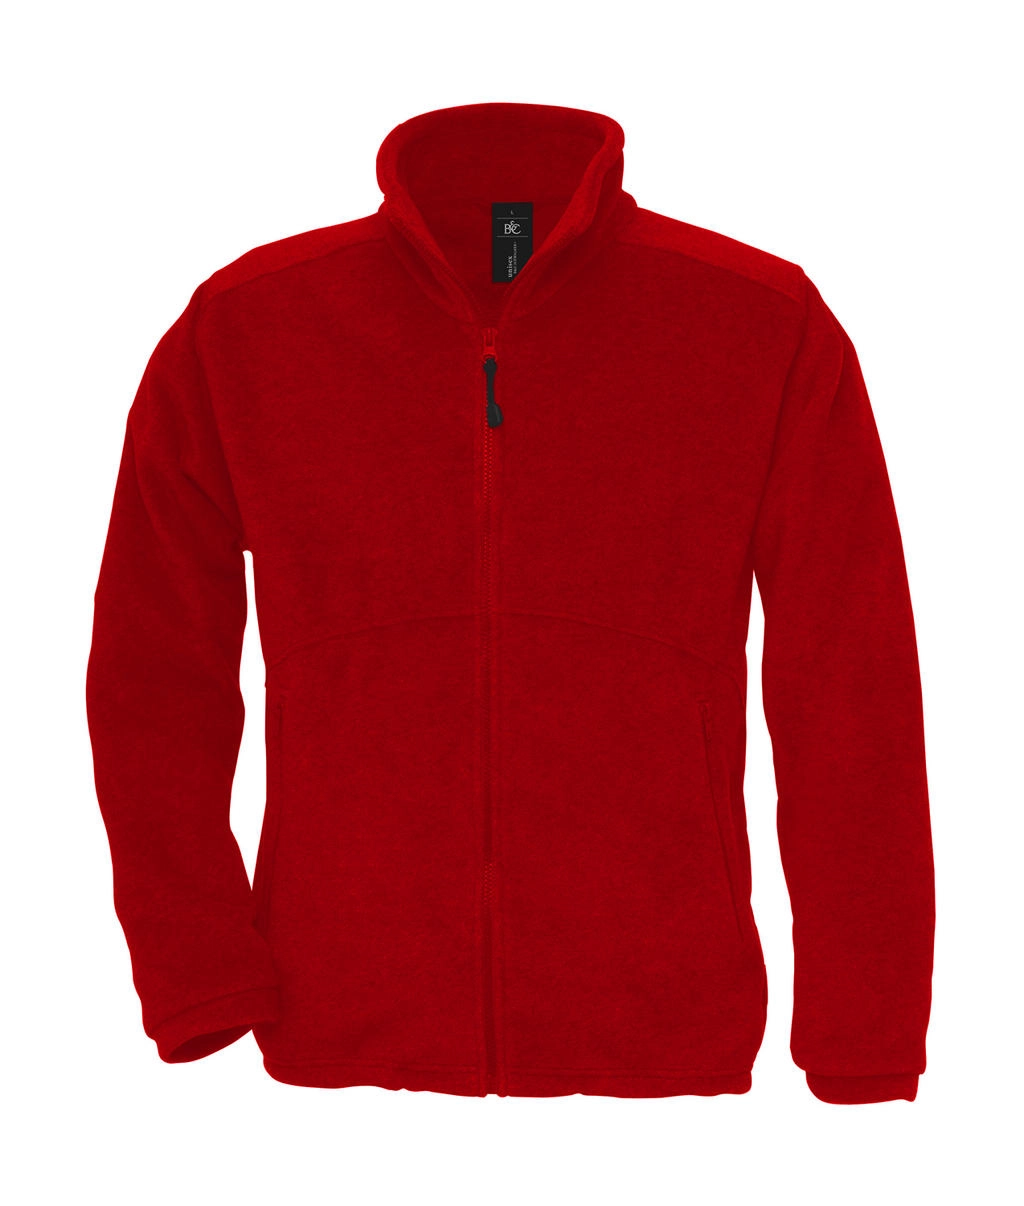 Icewalker+ Outdoor Full Zip Fleece zum Besticken und Bedrucken in der Farbe Red mit Ihren Logo, Schriftzug oder Motiv.